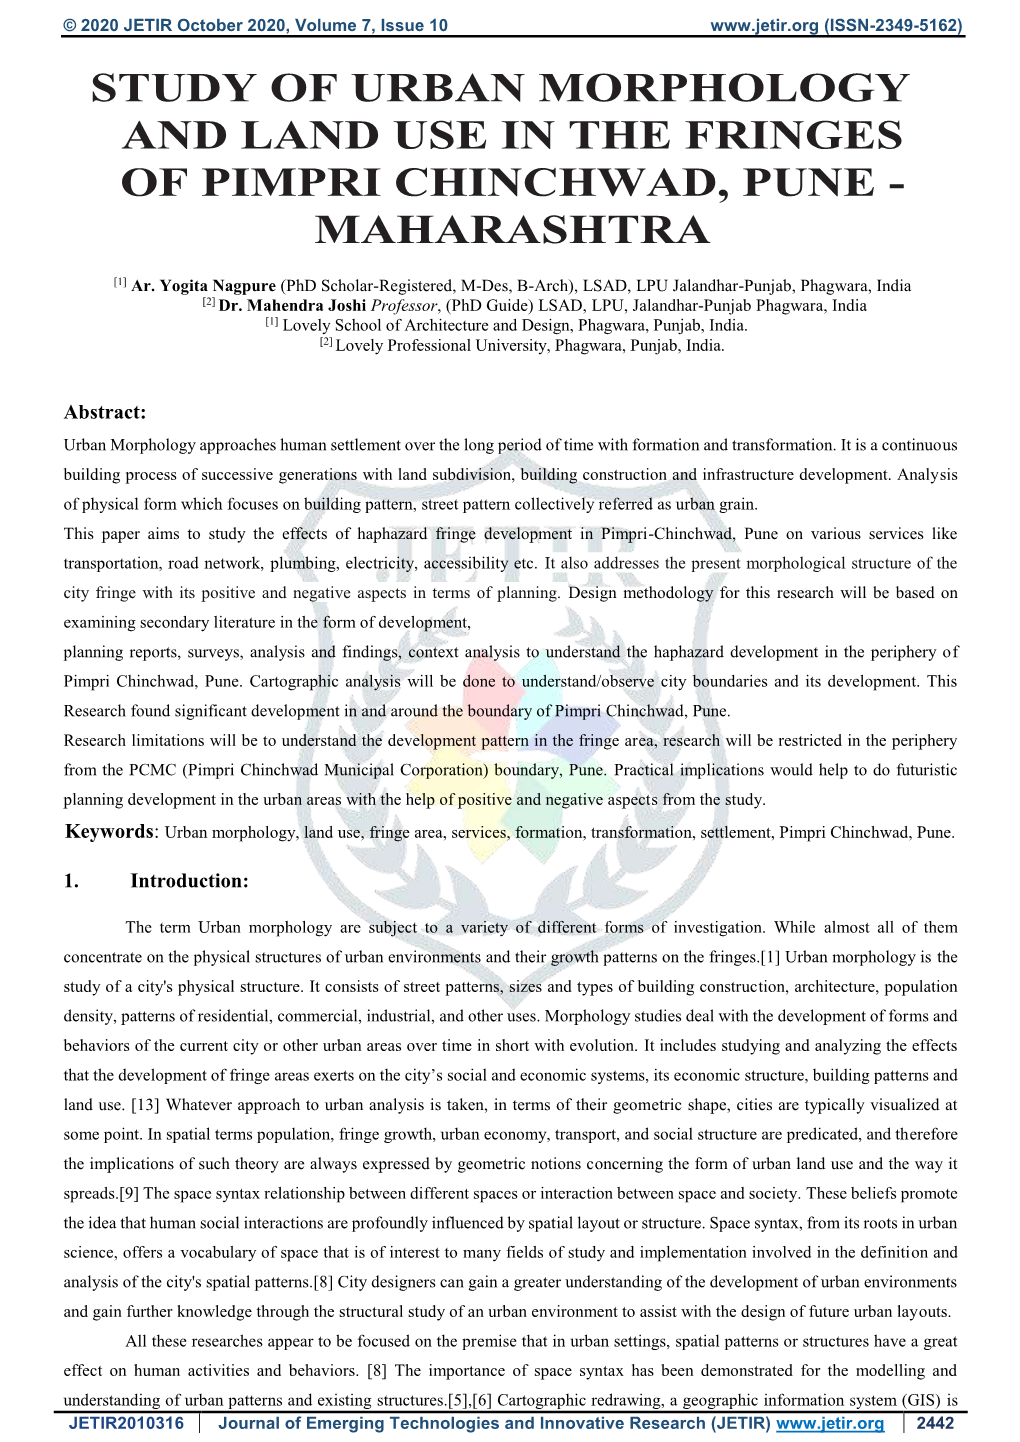 Study of Urban Morphology and Land Use in the Fringes of Pimpri Chinchwad, Pune - Maharashtra